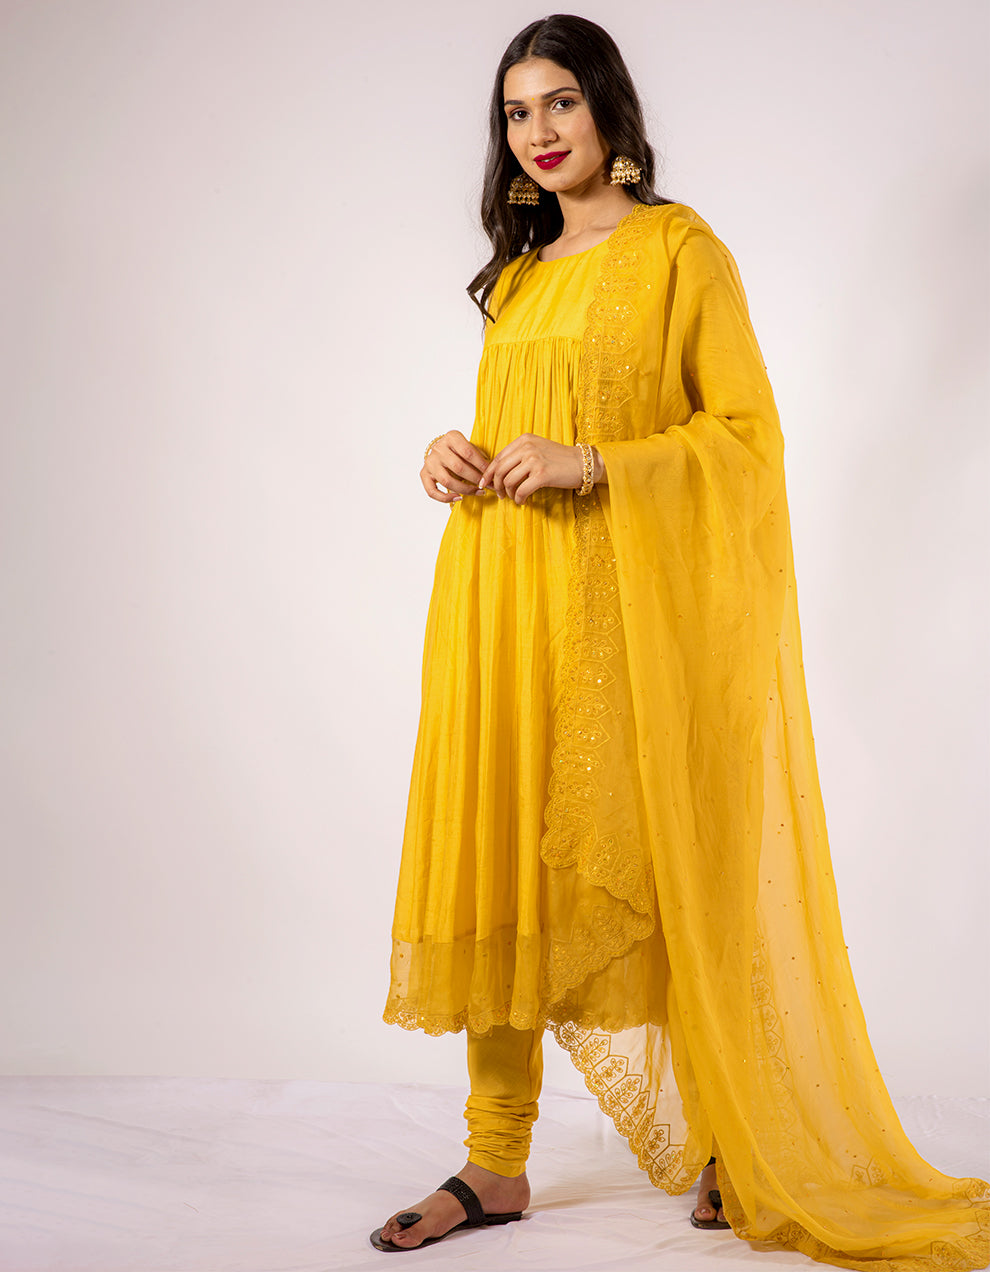 Yellow anarkali kurta with churidar pants